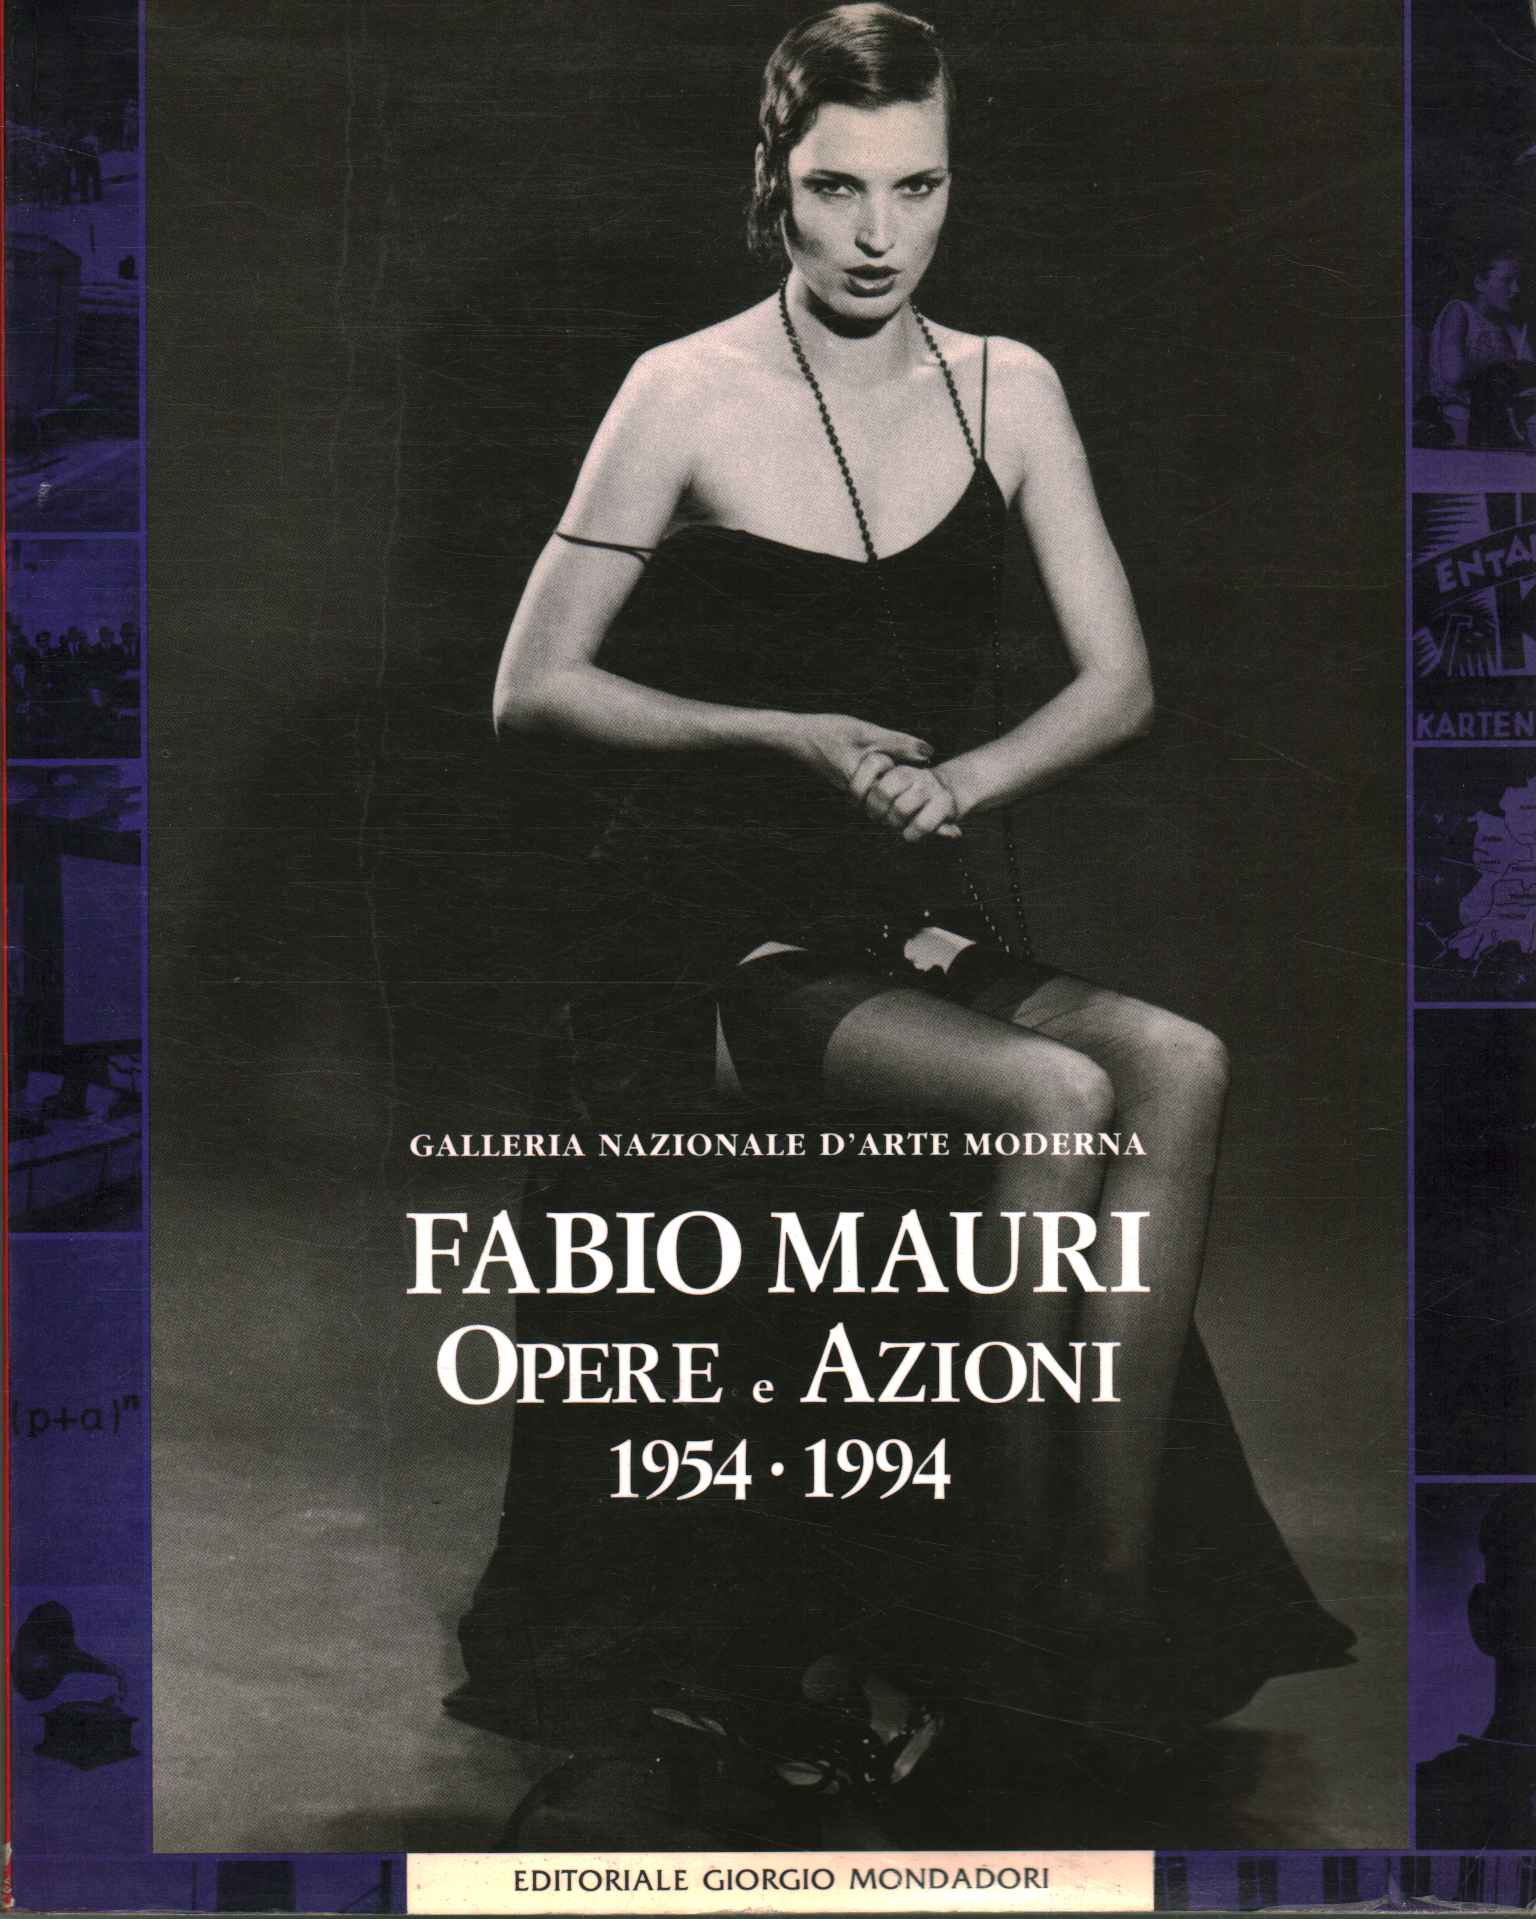 Fabio Mauricio. Obras y actuaciones 1954-1994